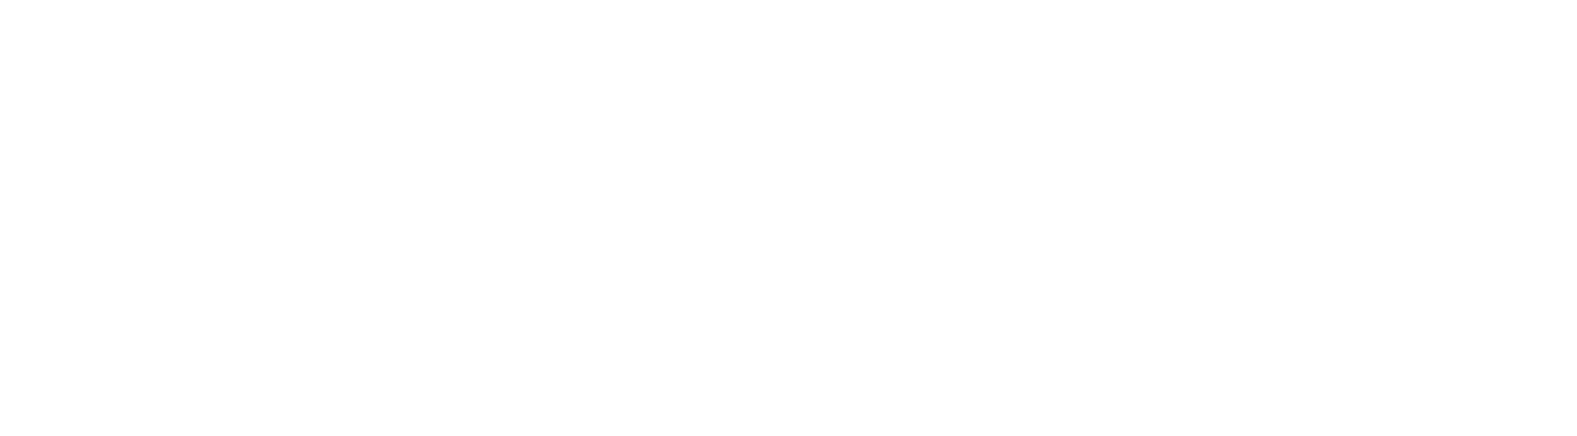 Standex Logo groß für dunkle Hintergründe (transparentes PNG)